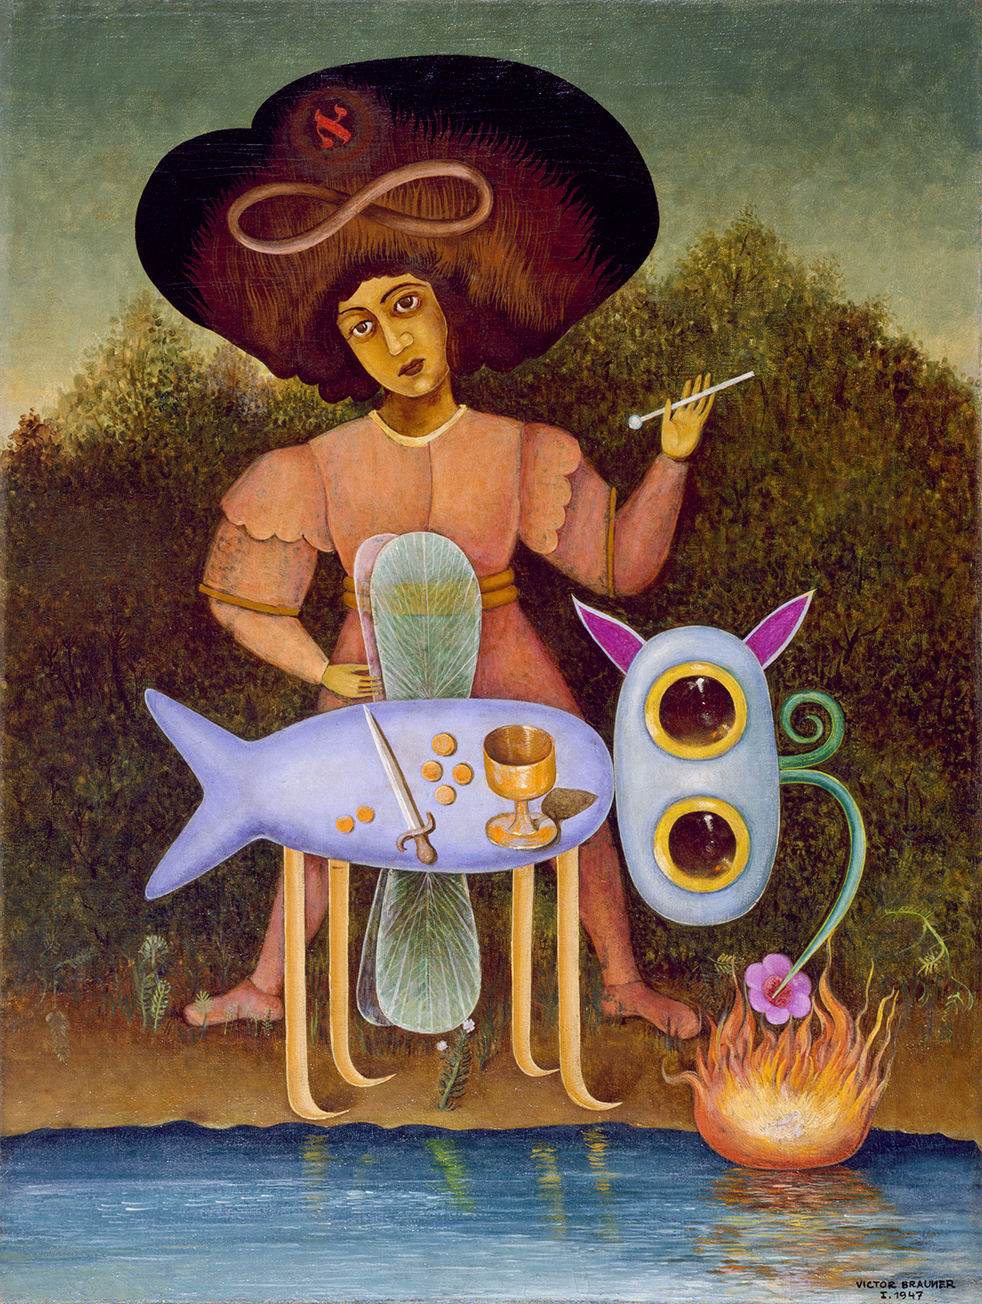 Victor Brauner, Il surrealista, 1947, olio su tela, 60 x 45 cm. Peggy Guggenheim Collection, Venice (Solomon R. Guggenheim Foundation, New York) © Victor Brauner, by SIAE 2022